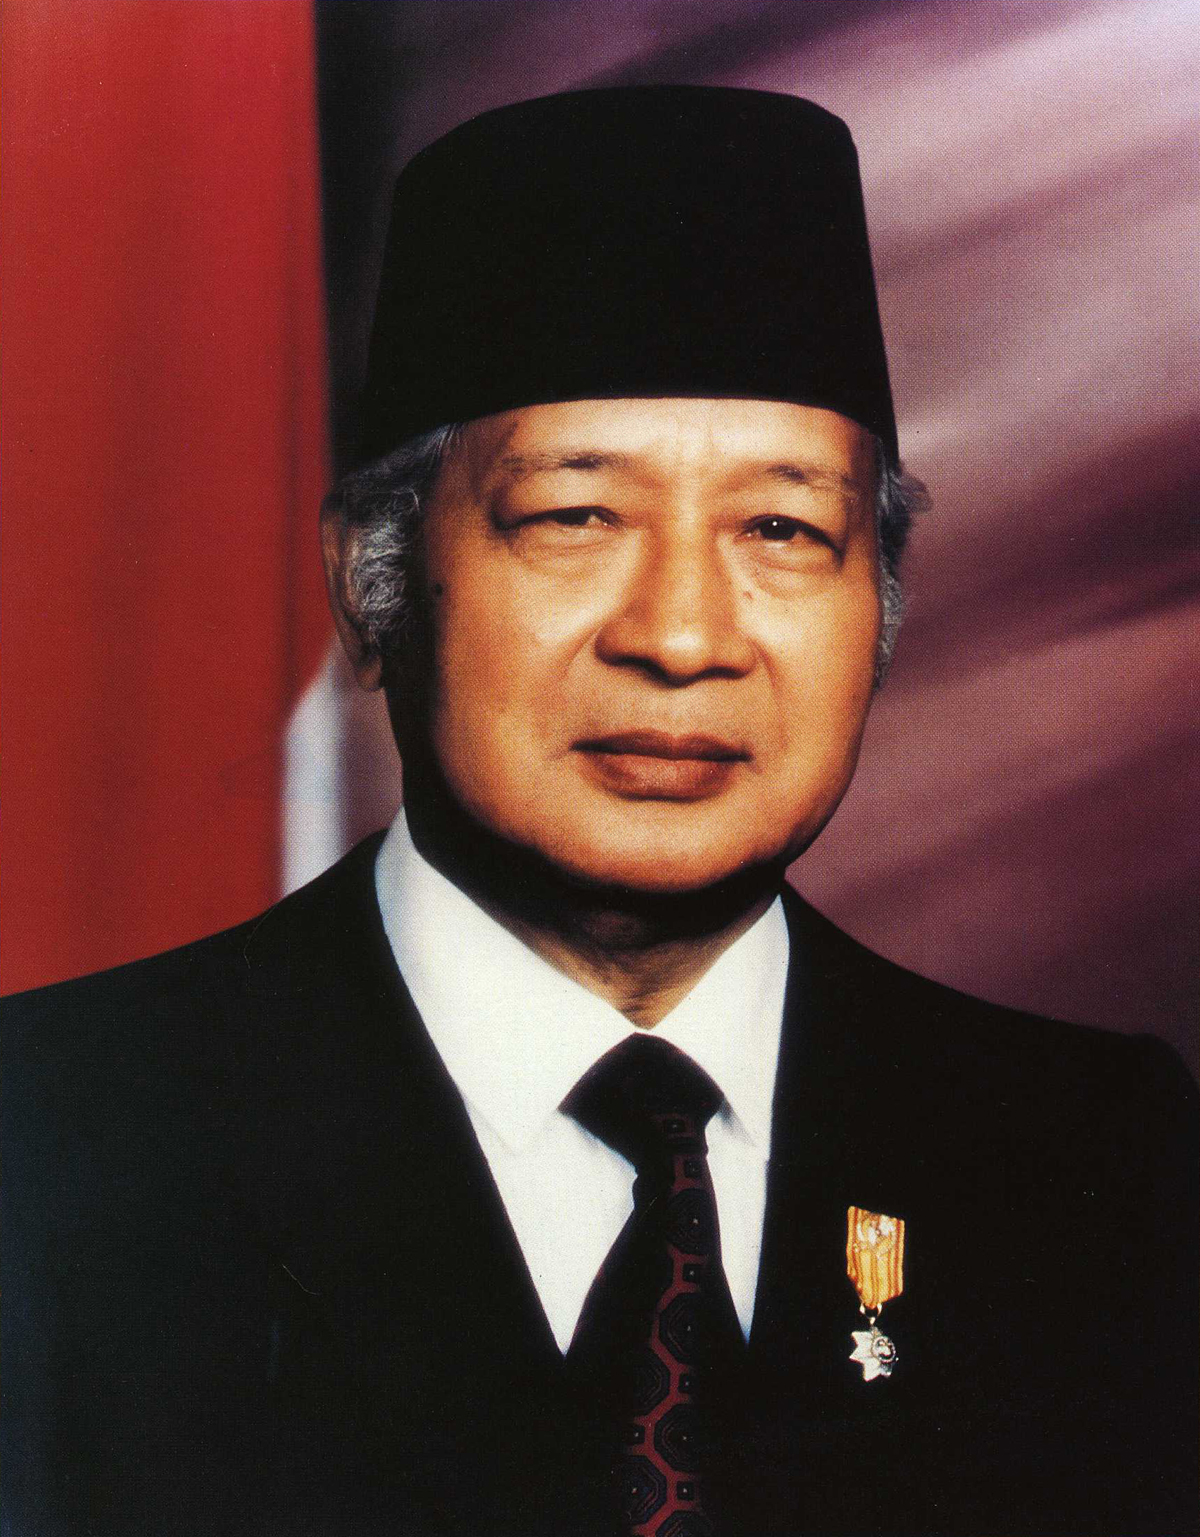 ... biografi singkat presiden indonesia 230 x 320 jpeg 18kb biografi jusuf